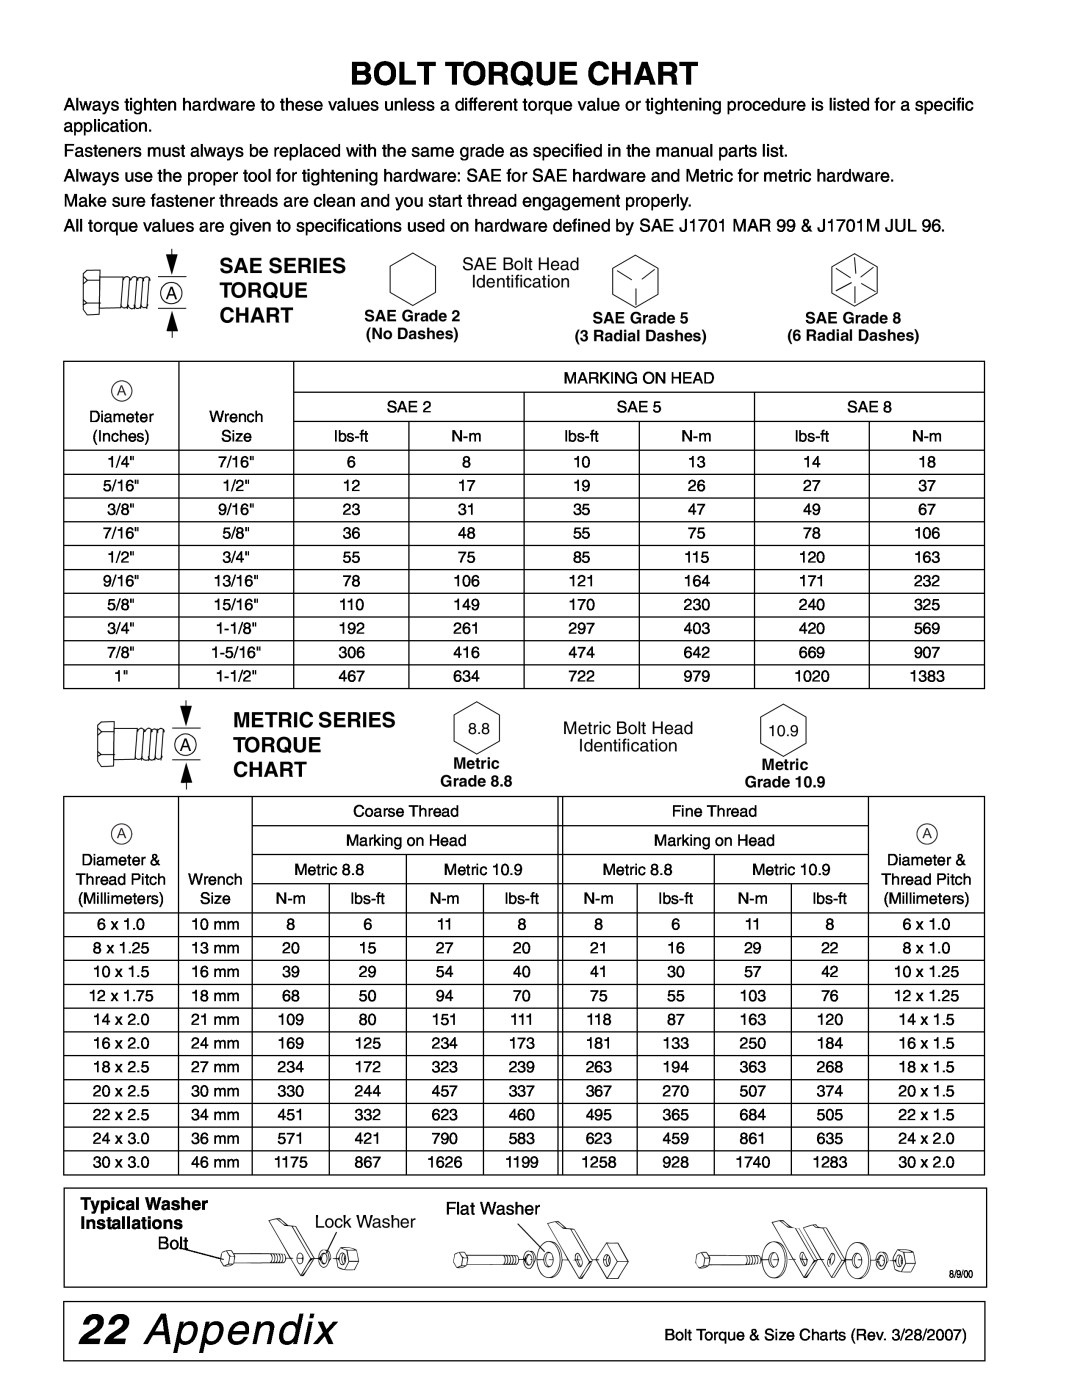 Woods Equipment 59CLF-4, 59CL-4 manual Appendix, Bolt Torque Chart, Sae Series A Torque Chart, Metric Series A Torque Chart 